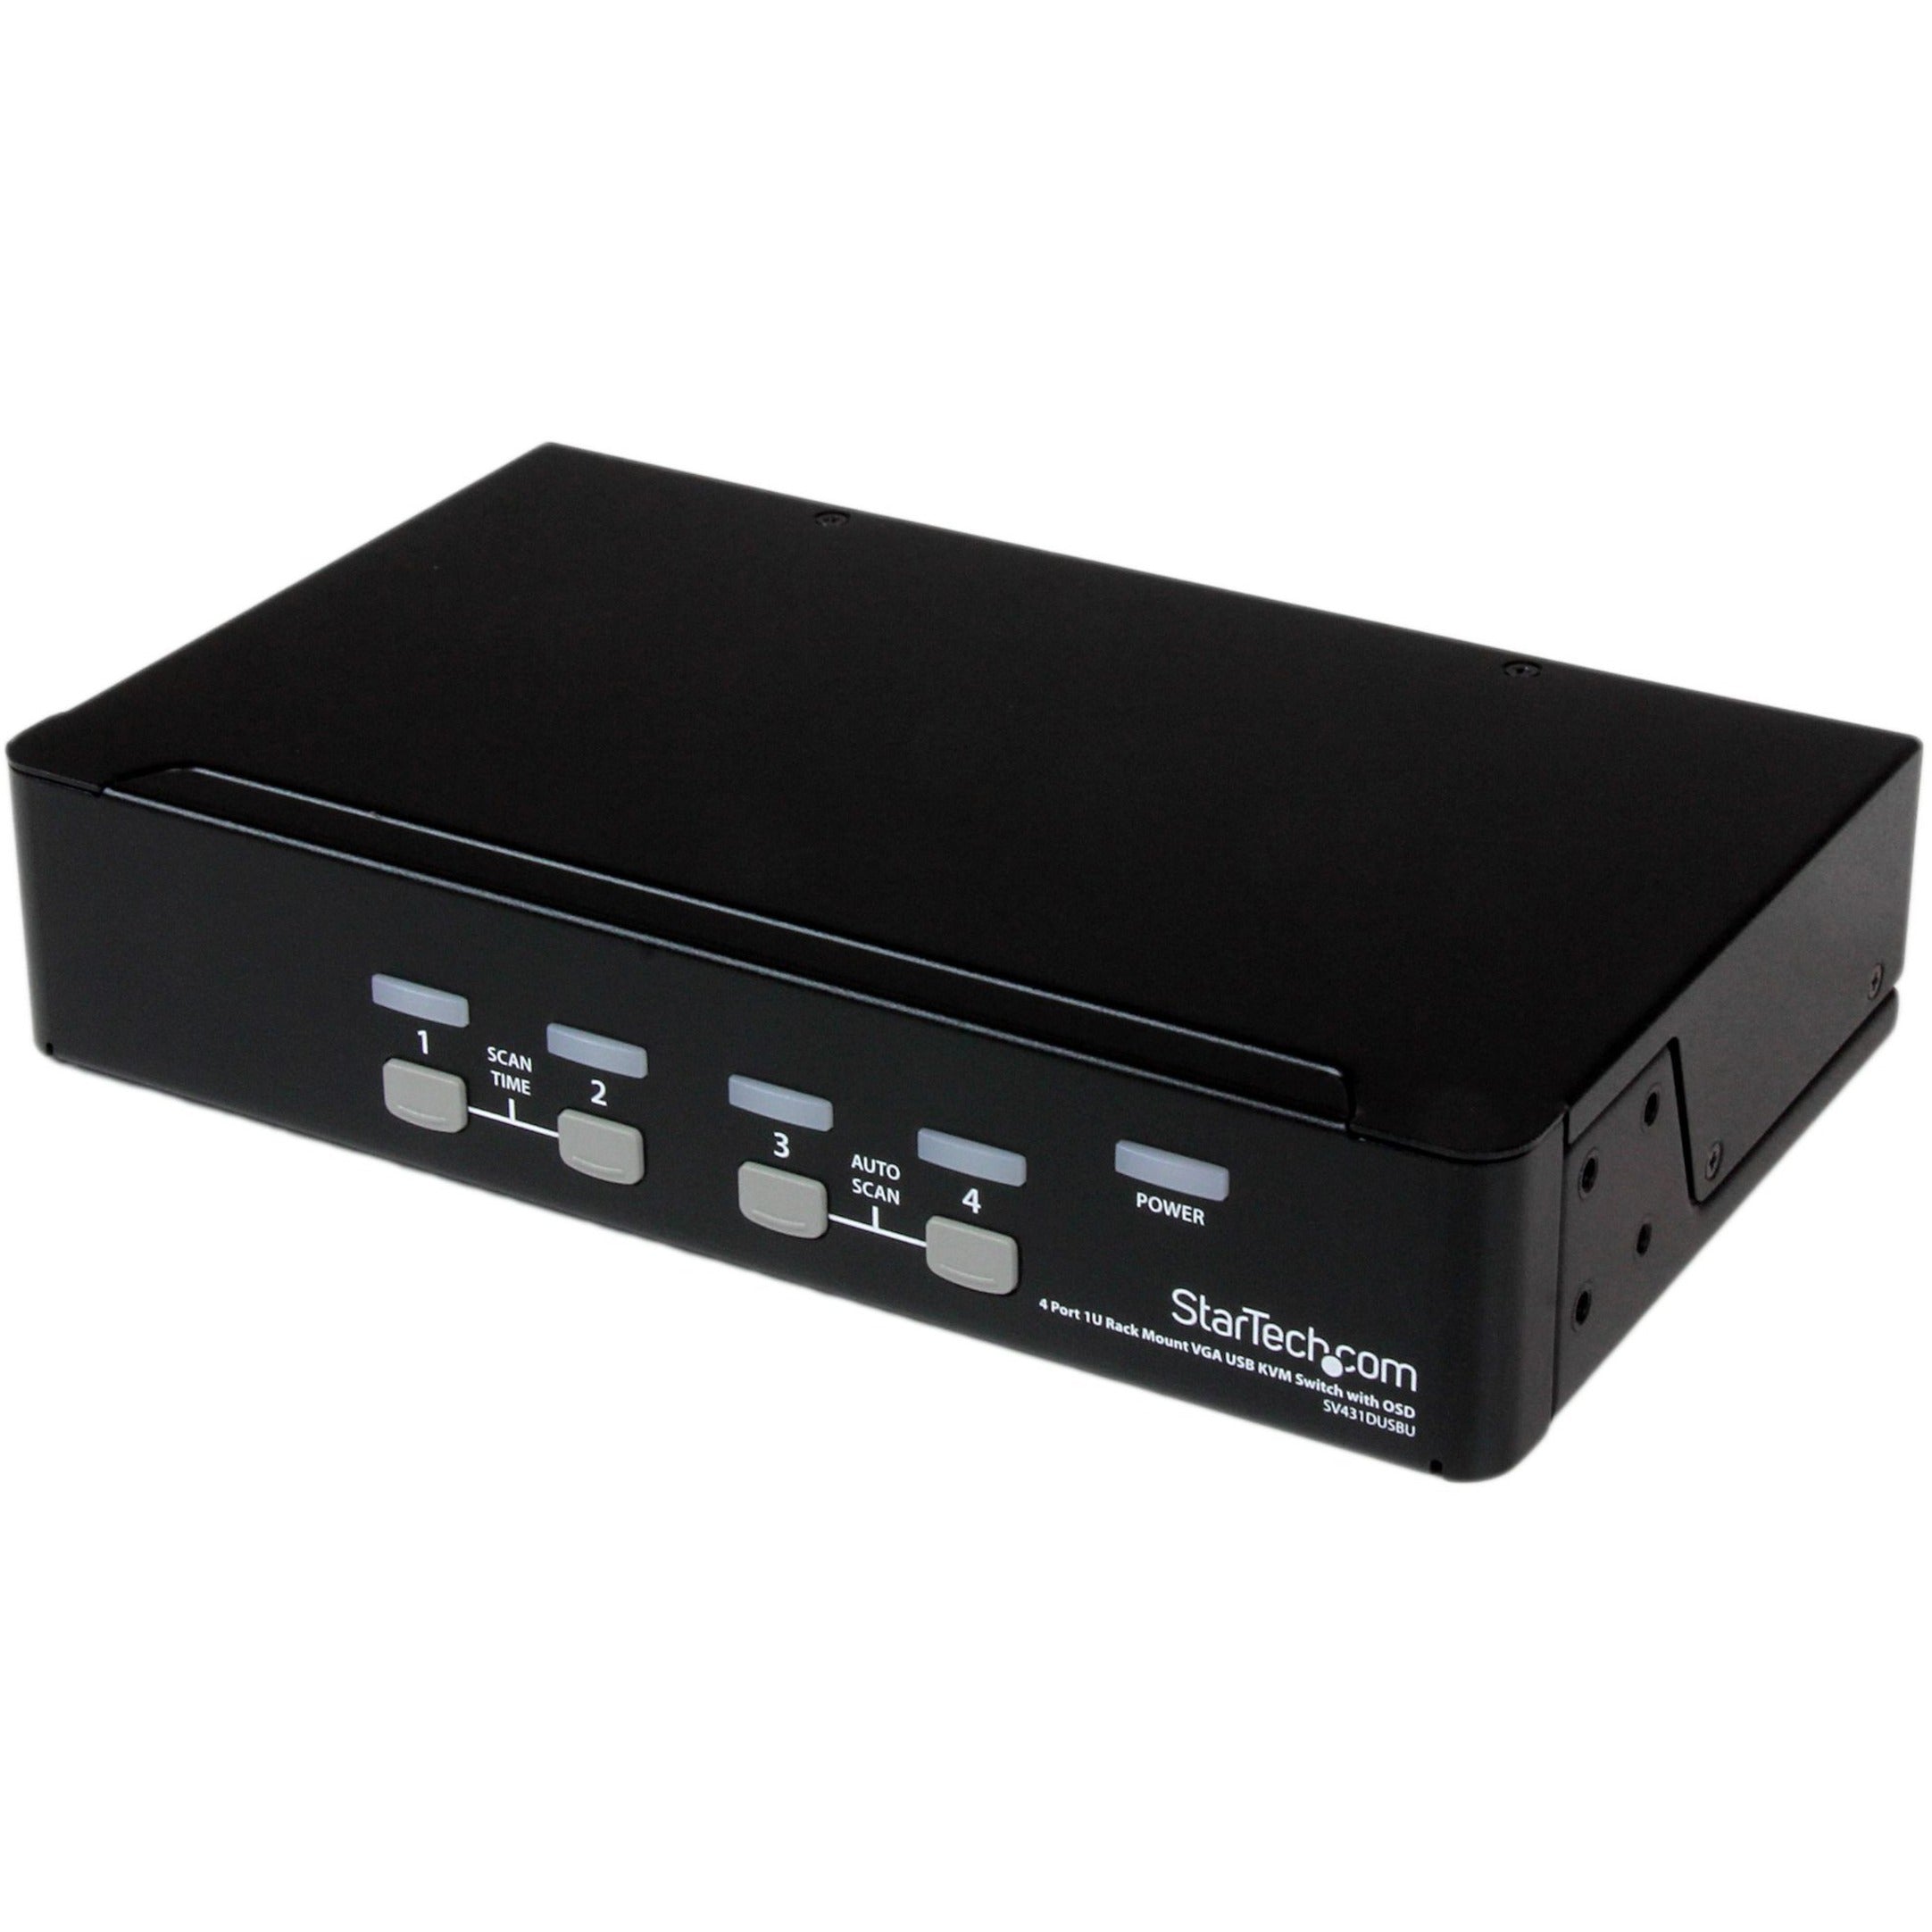 StarTech.com SV431DUSBU 4 Port 1U Rackmount USB KVM Switch with OSD Maximale Videoauflösung 1920 x 1440 3 Jahre eingeschränkte Garantie